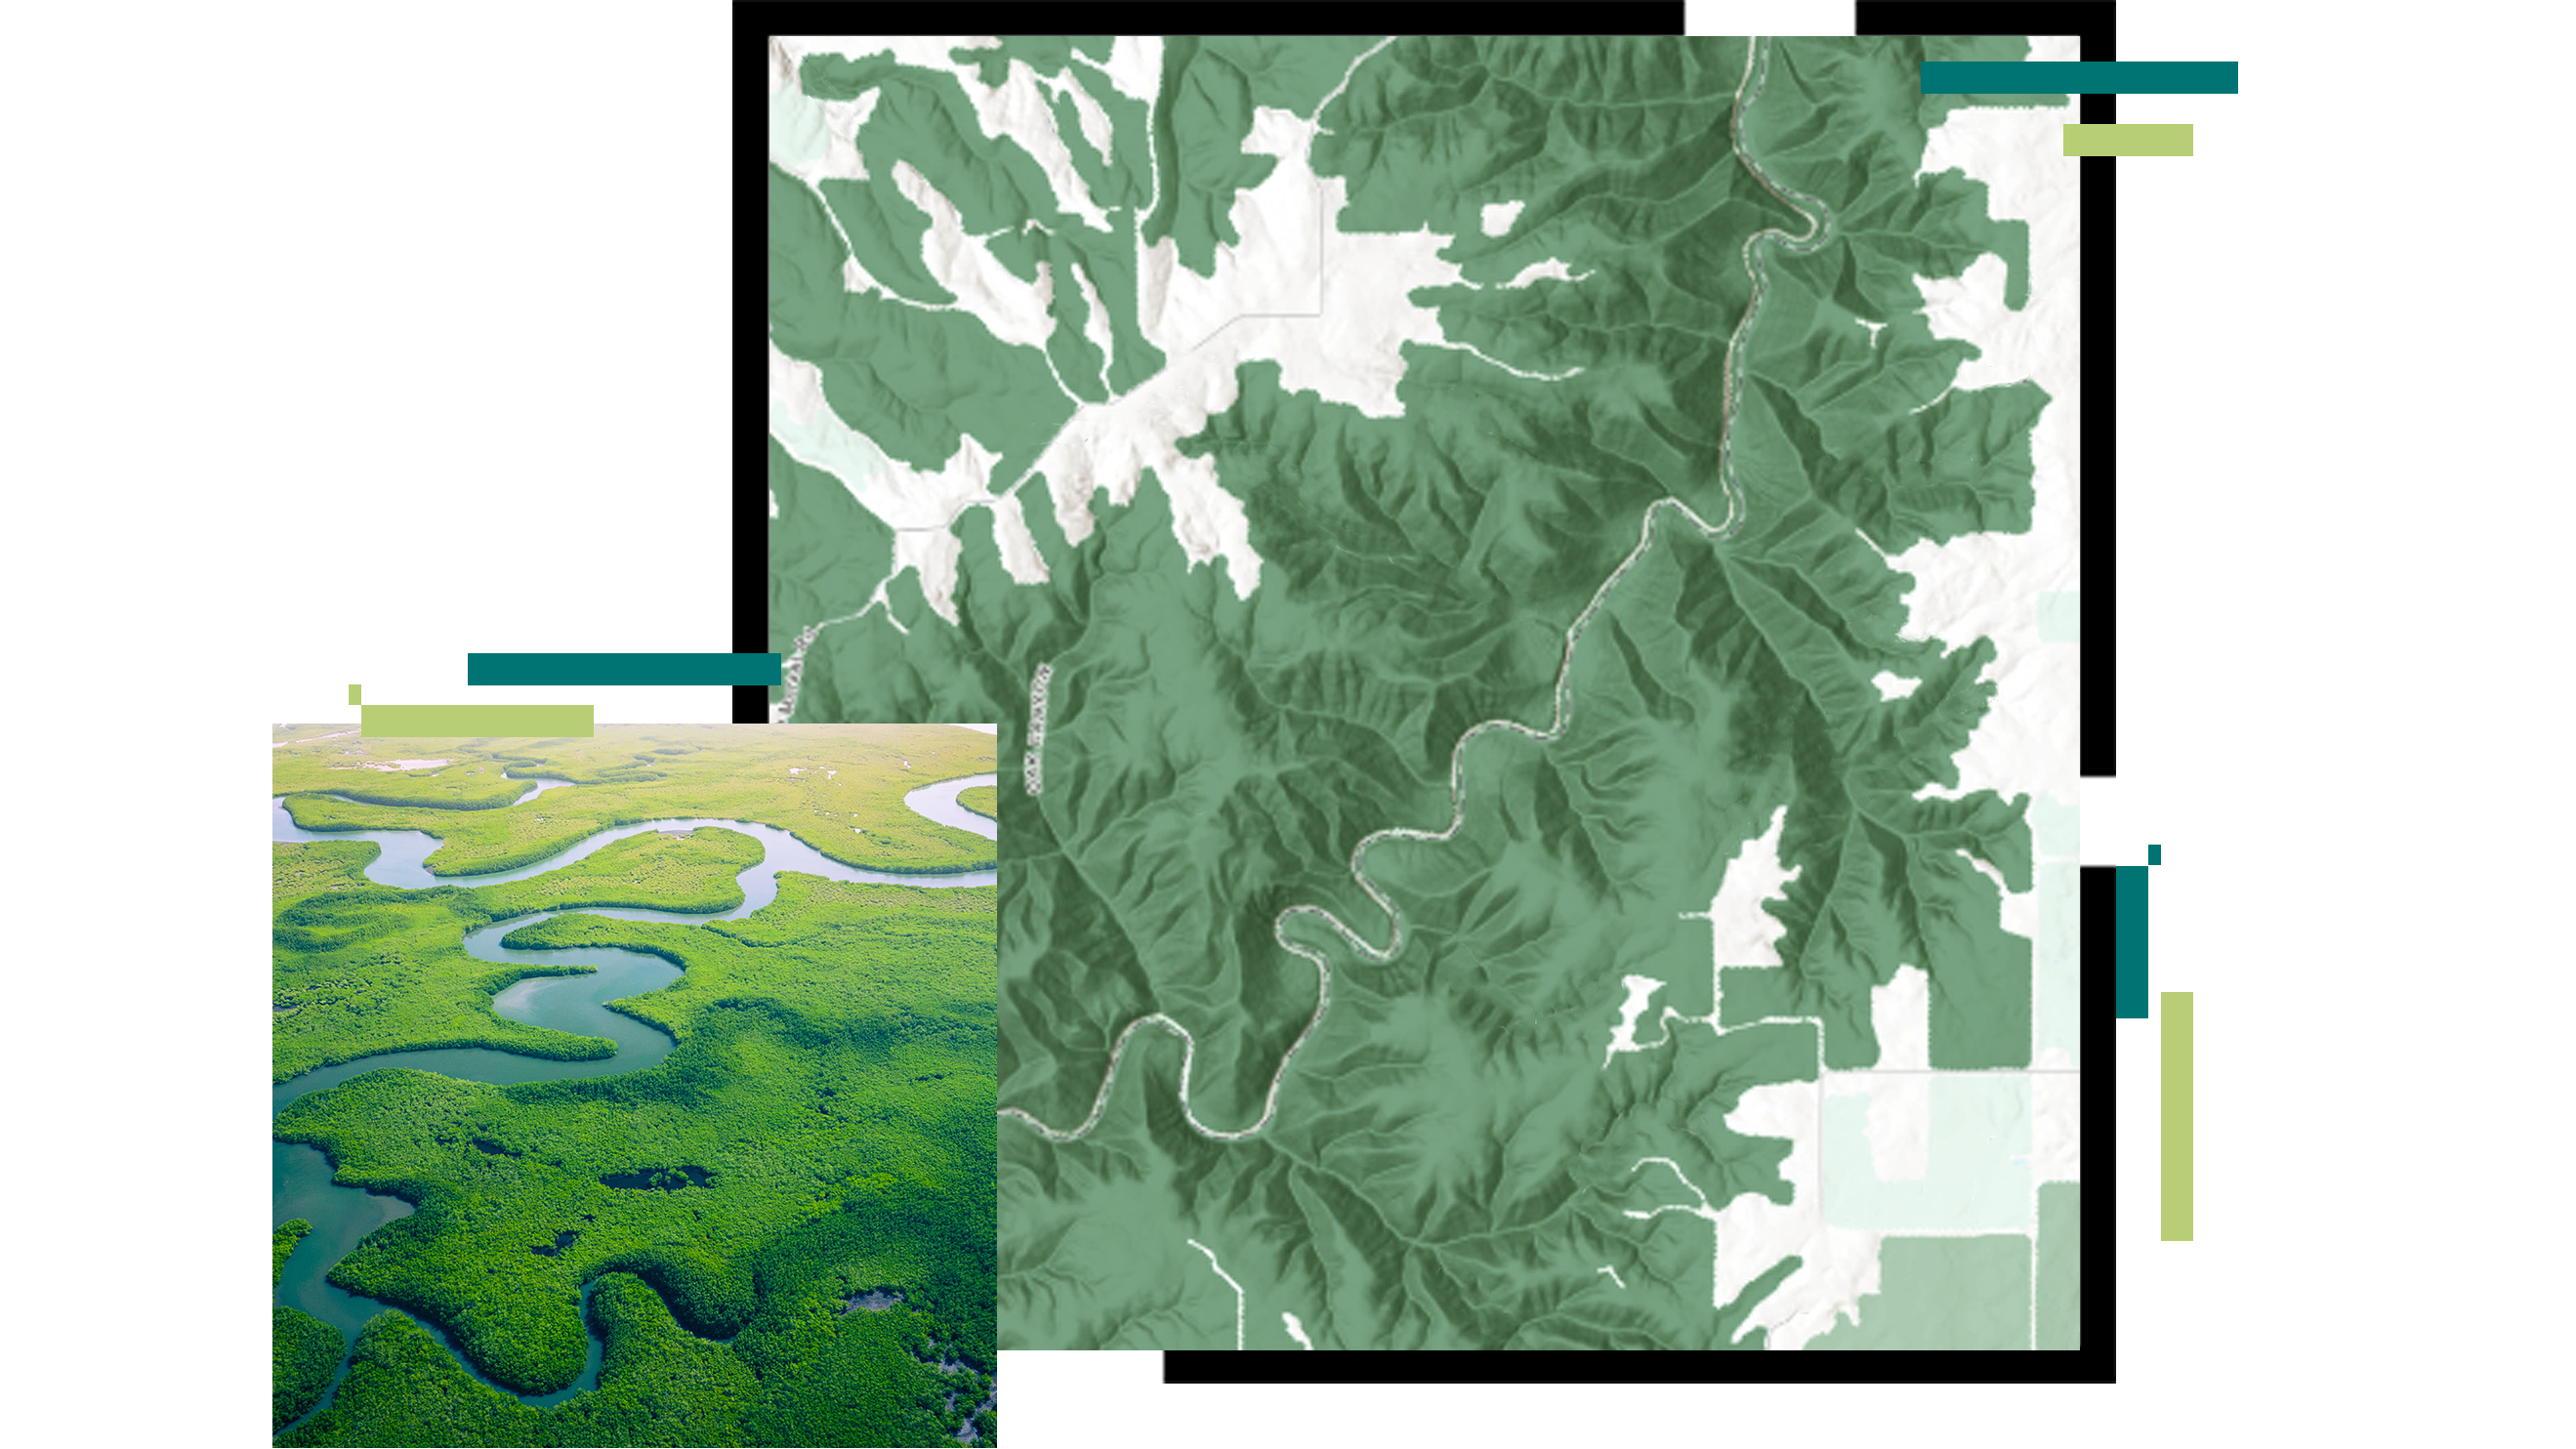 Un mapa en relieve de un río sinuoso superpuesto con una imagen aérea de un bosque de manglares de color verde brillante con un río azul atravesándolo